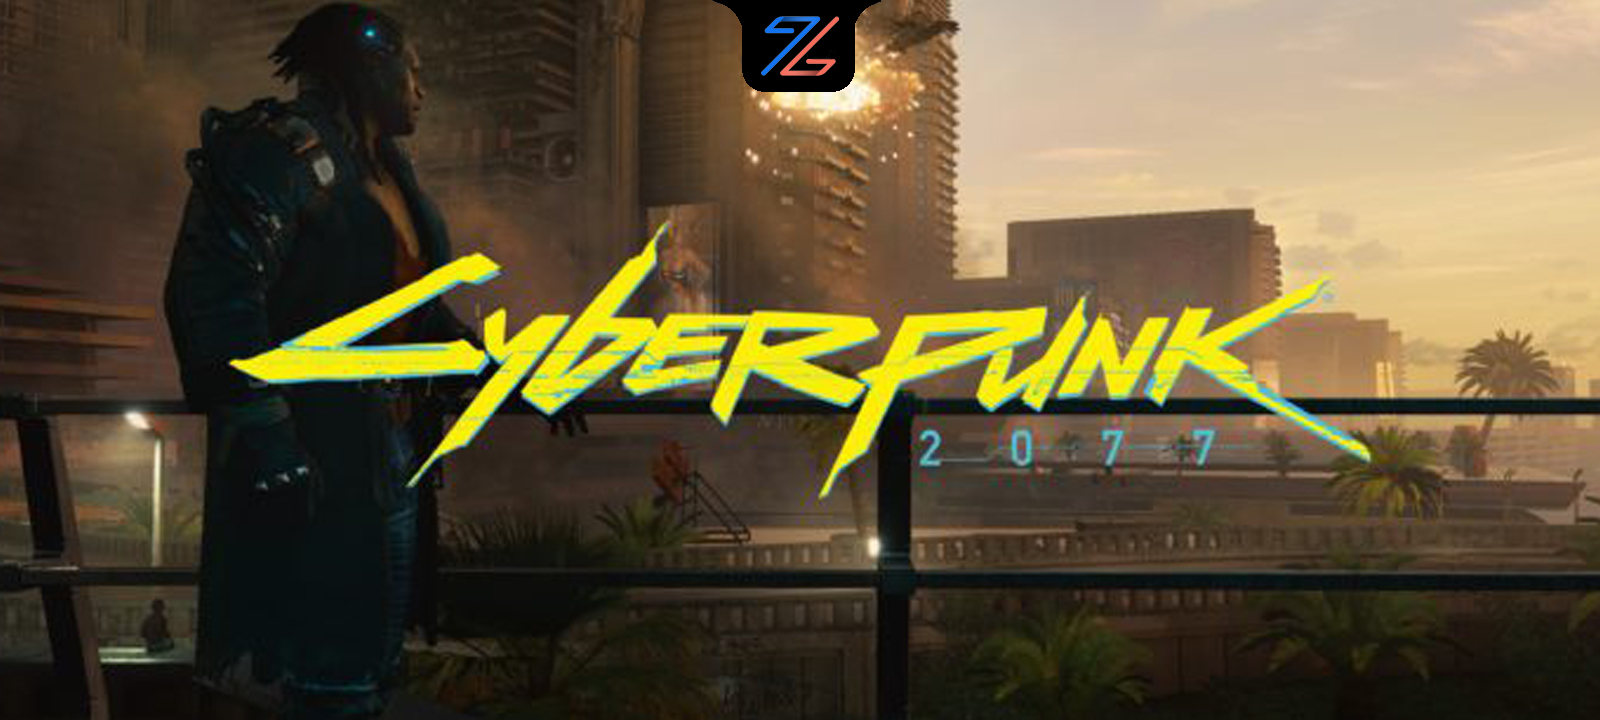 بررسی بازی Cyberpunk 2077 و  سخت افزارهای مورد نیاز آن